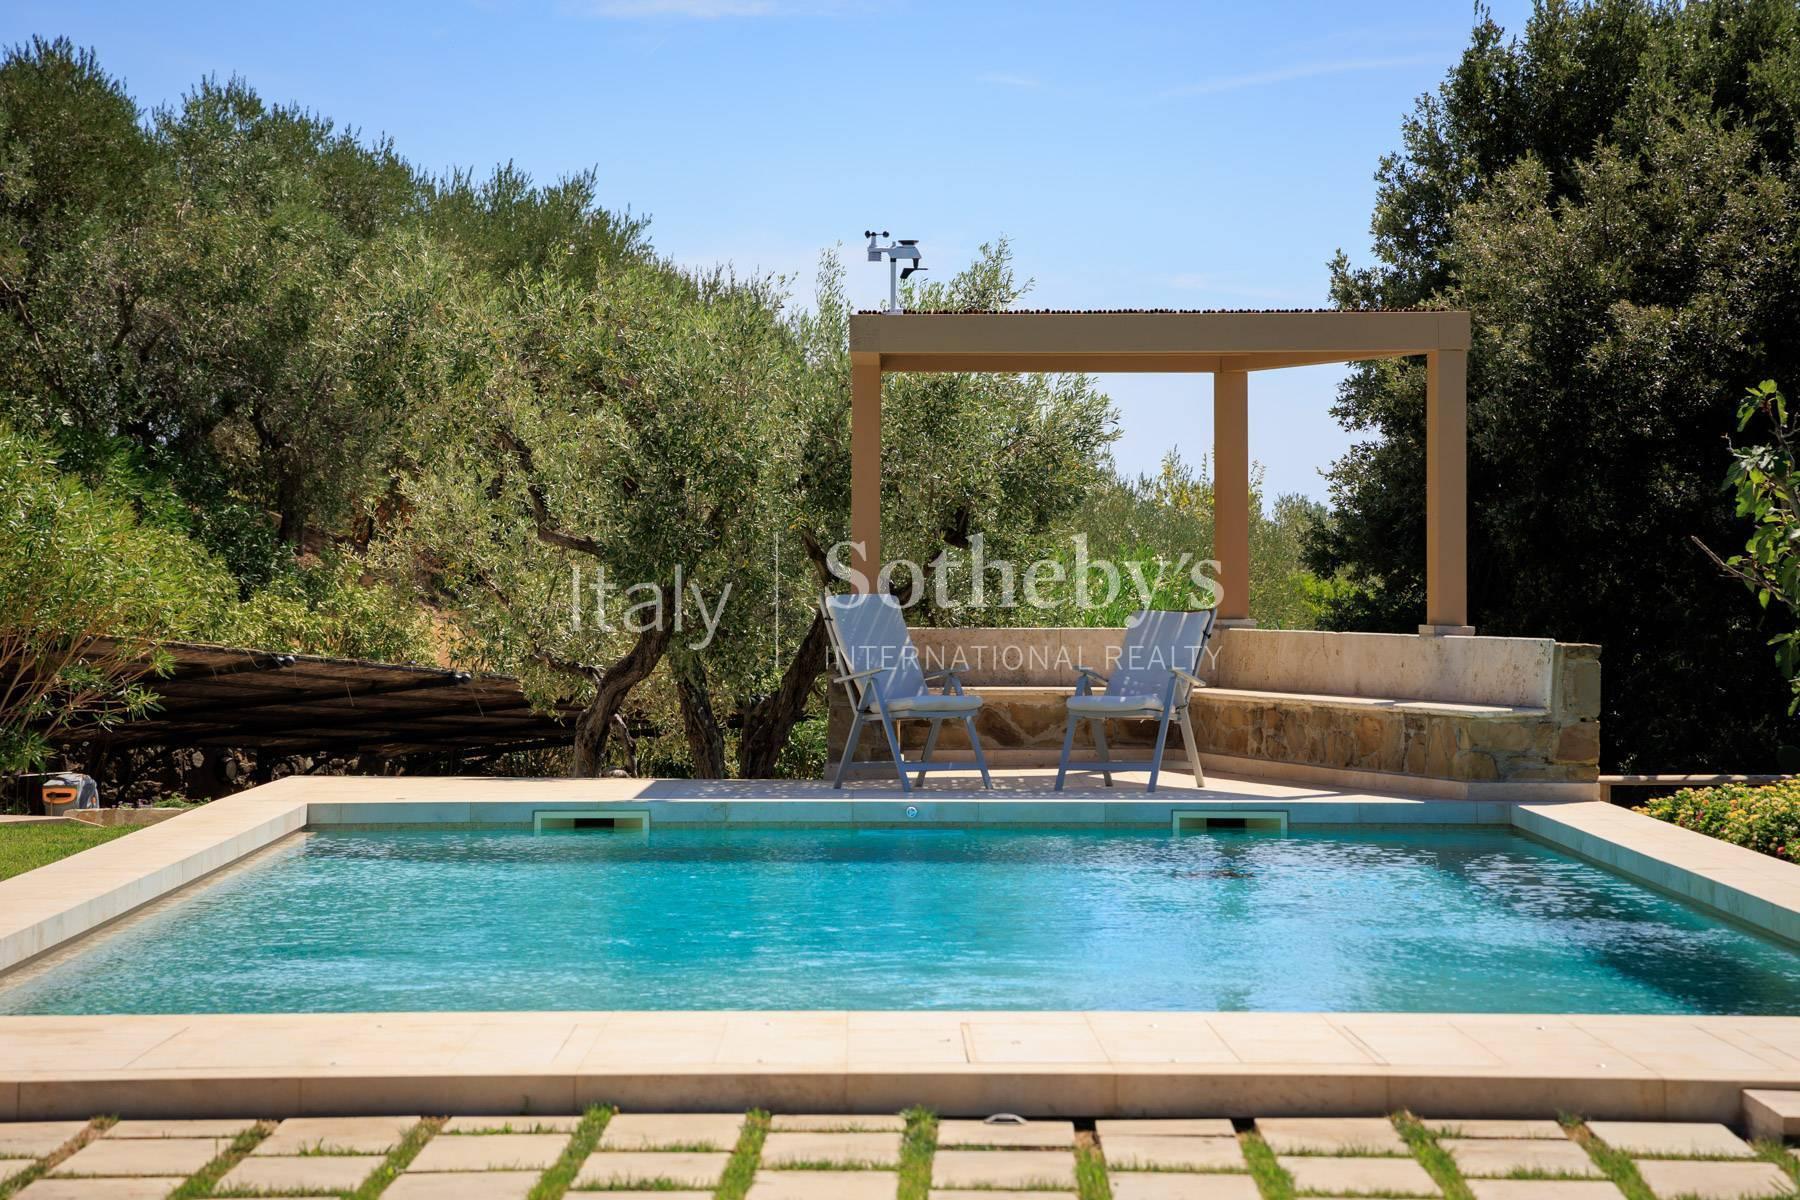 Восхитительное тосканское поместье с бассейном и виноградником недалеко от Гроссето, Италия - 25